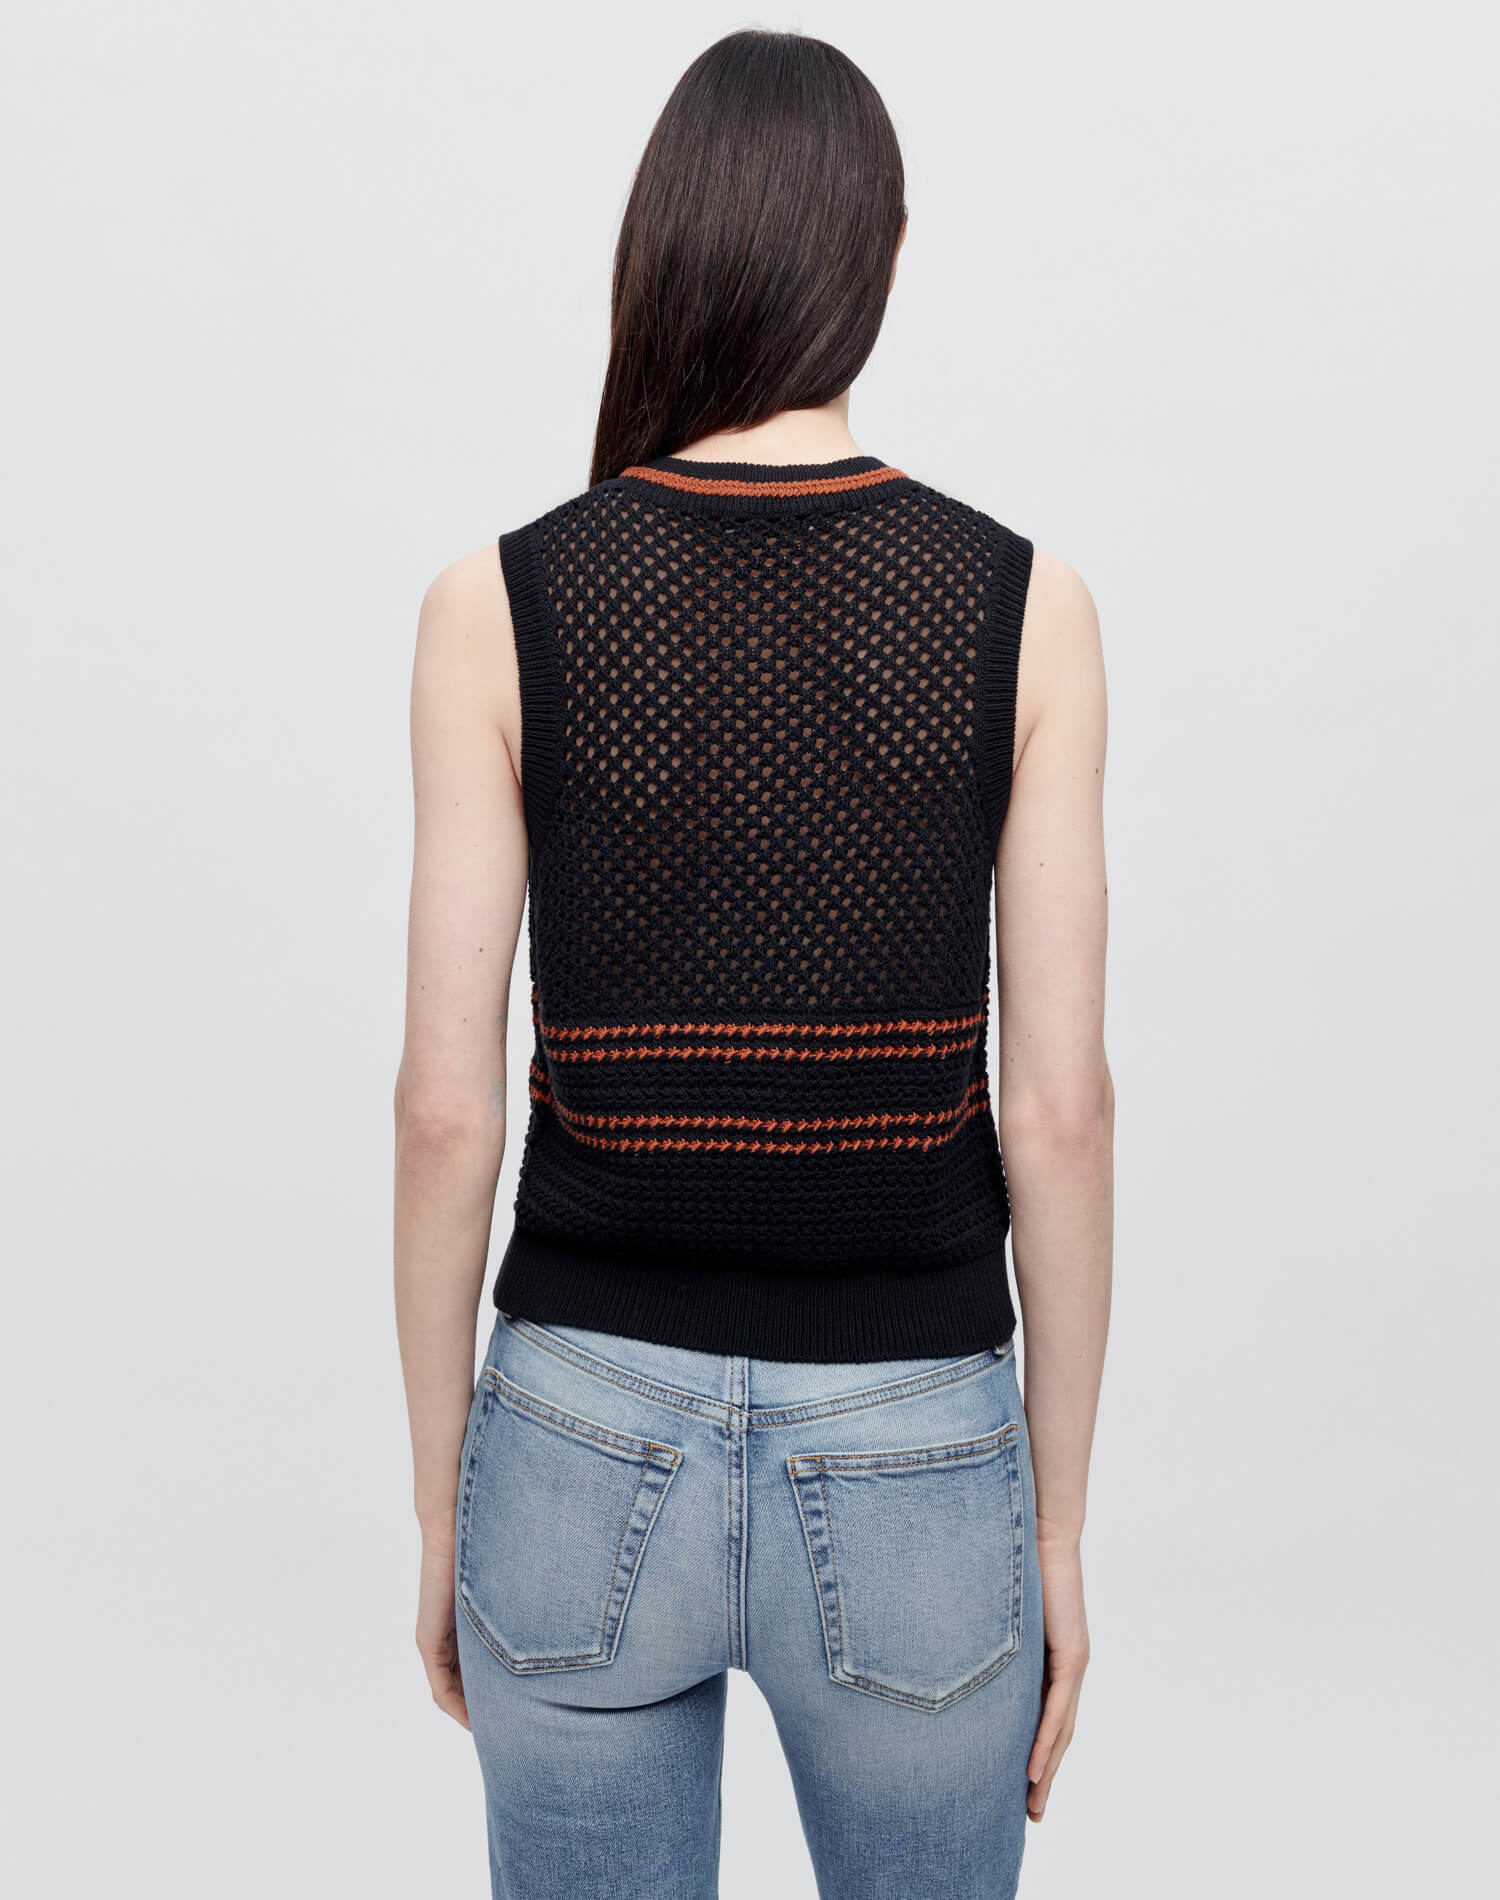 Crochet Mesh Vest - Black Combo